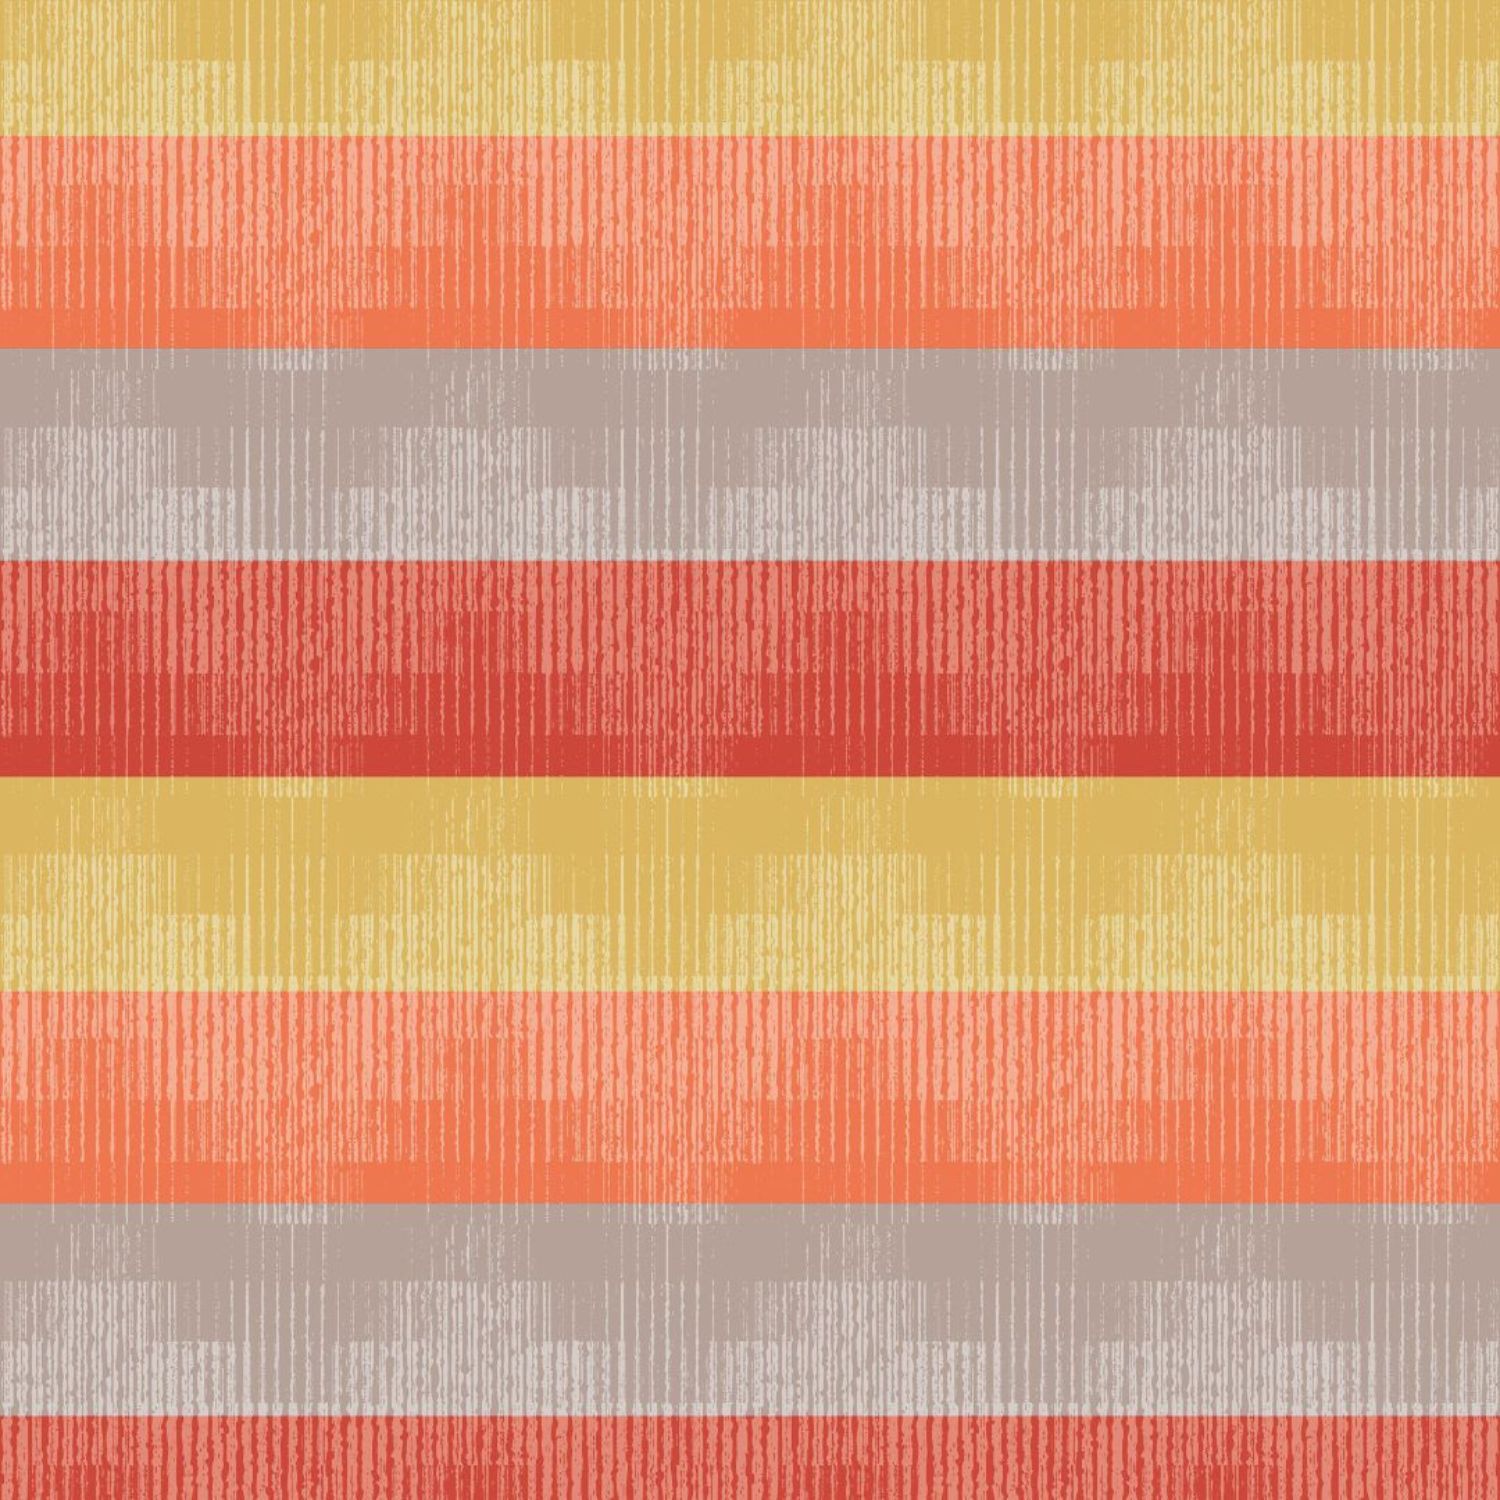 copritutto-telo-arredo-tuttofare-colors-arancio-geometrico-fasce-grigio-giallo-rosso-rigato-dettaglio